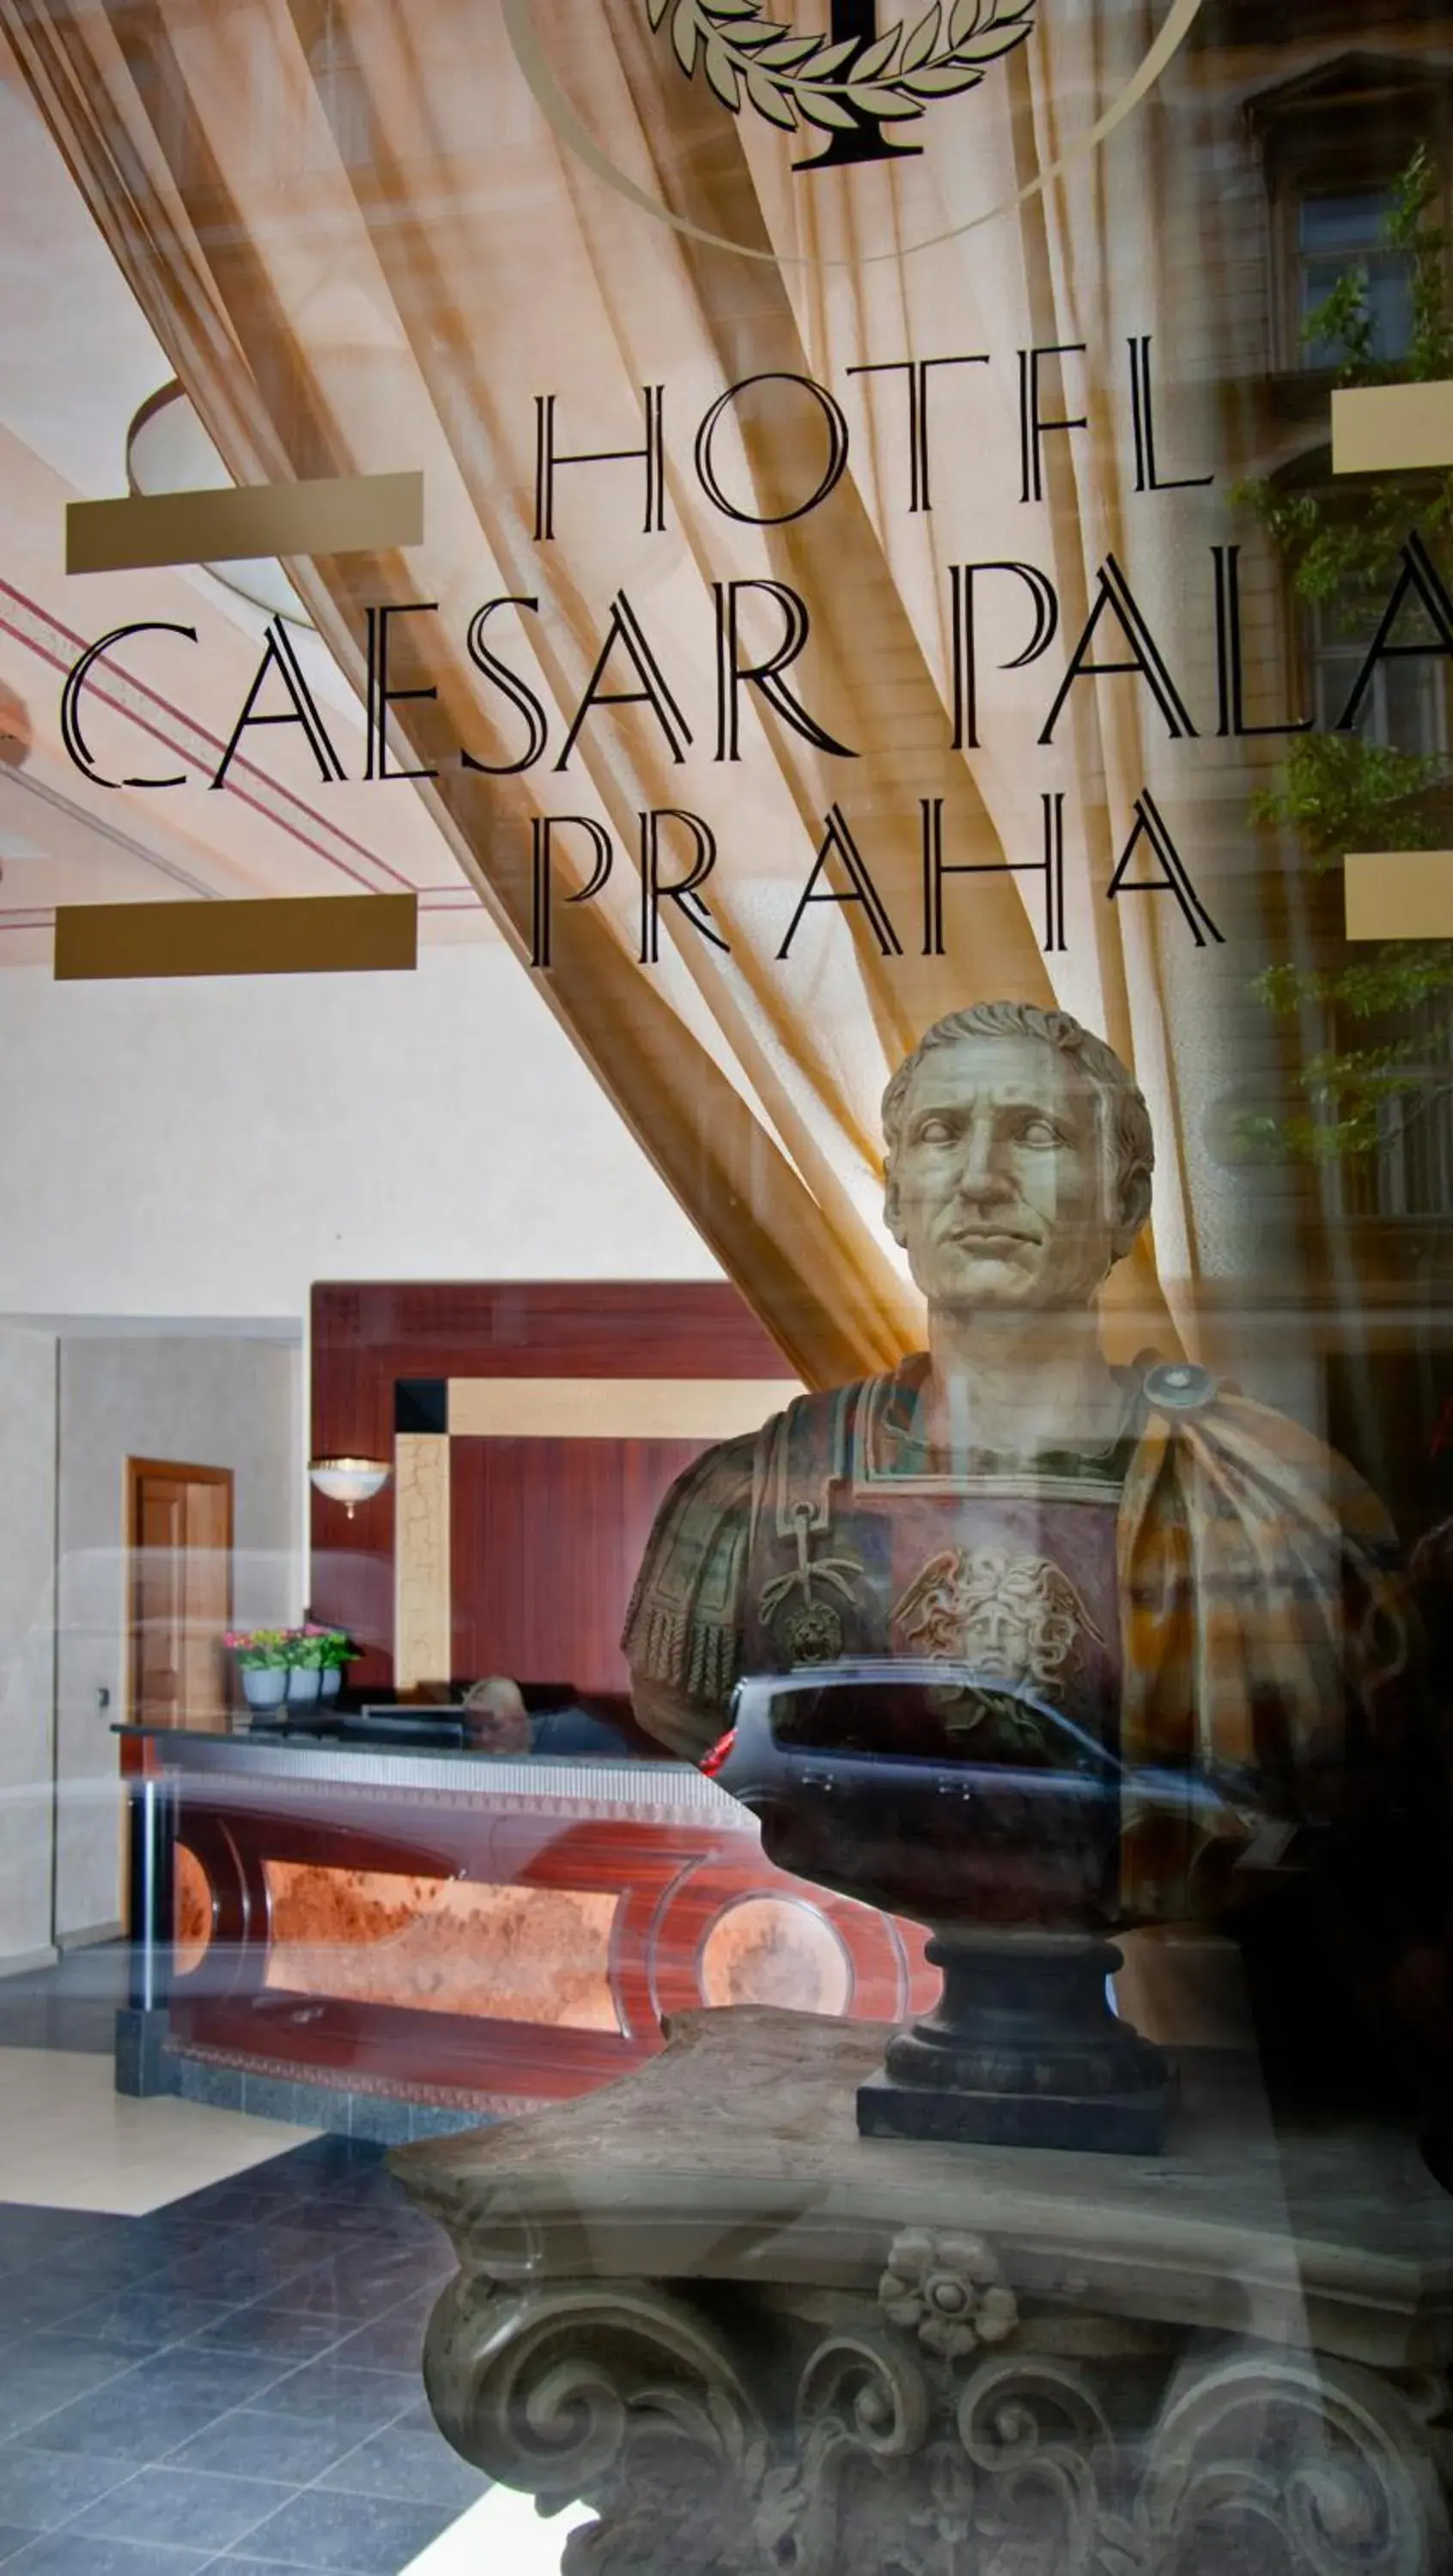 Logo/Certificate/Sign in Hotel Caesar Prague